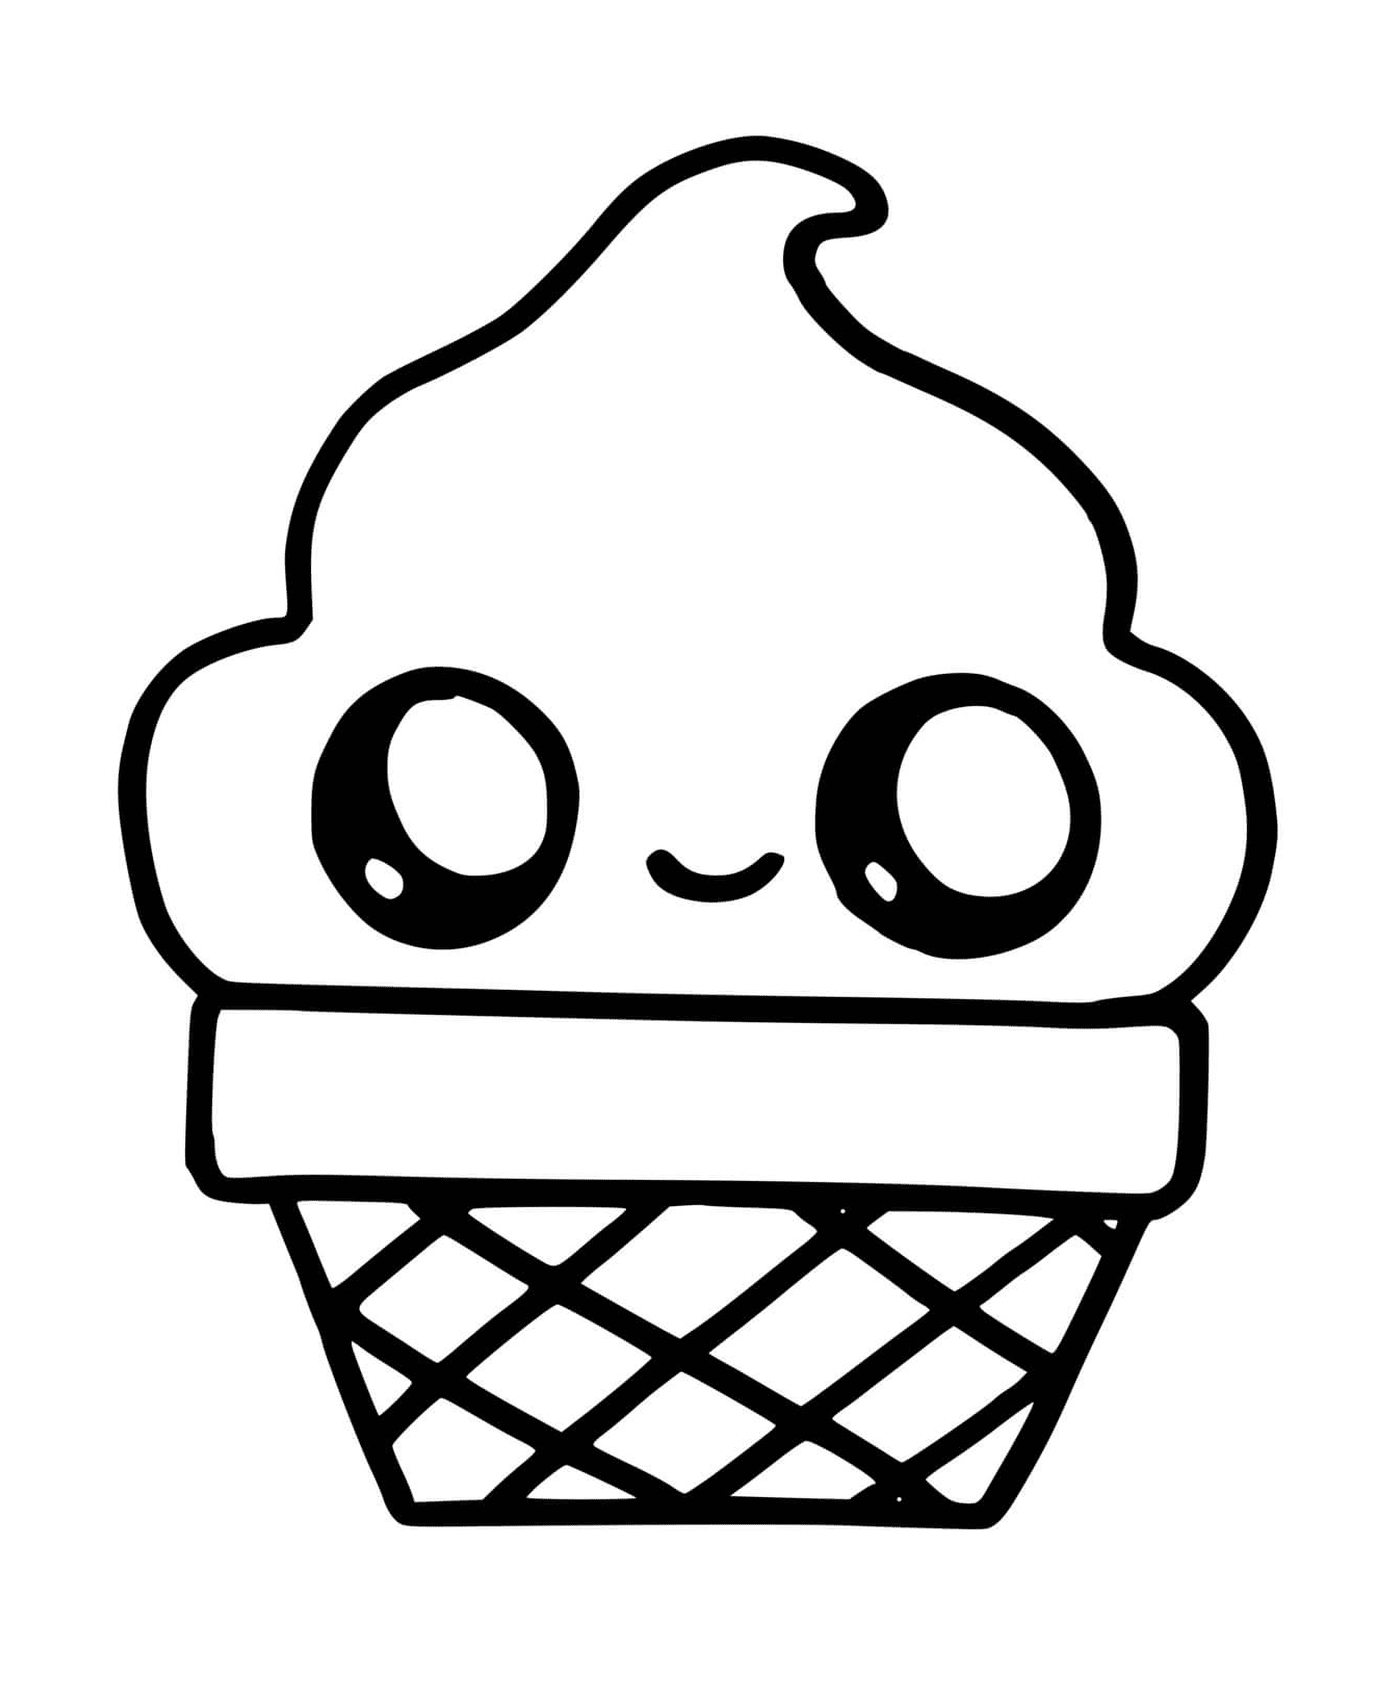  Un cono de hielo con un rostro sonriente dibujado en él 